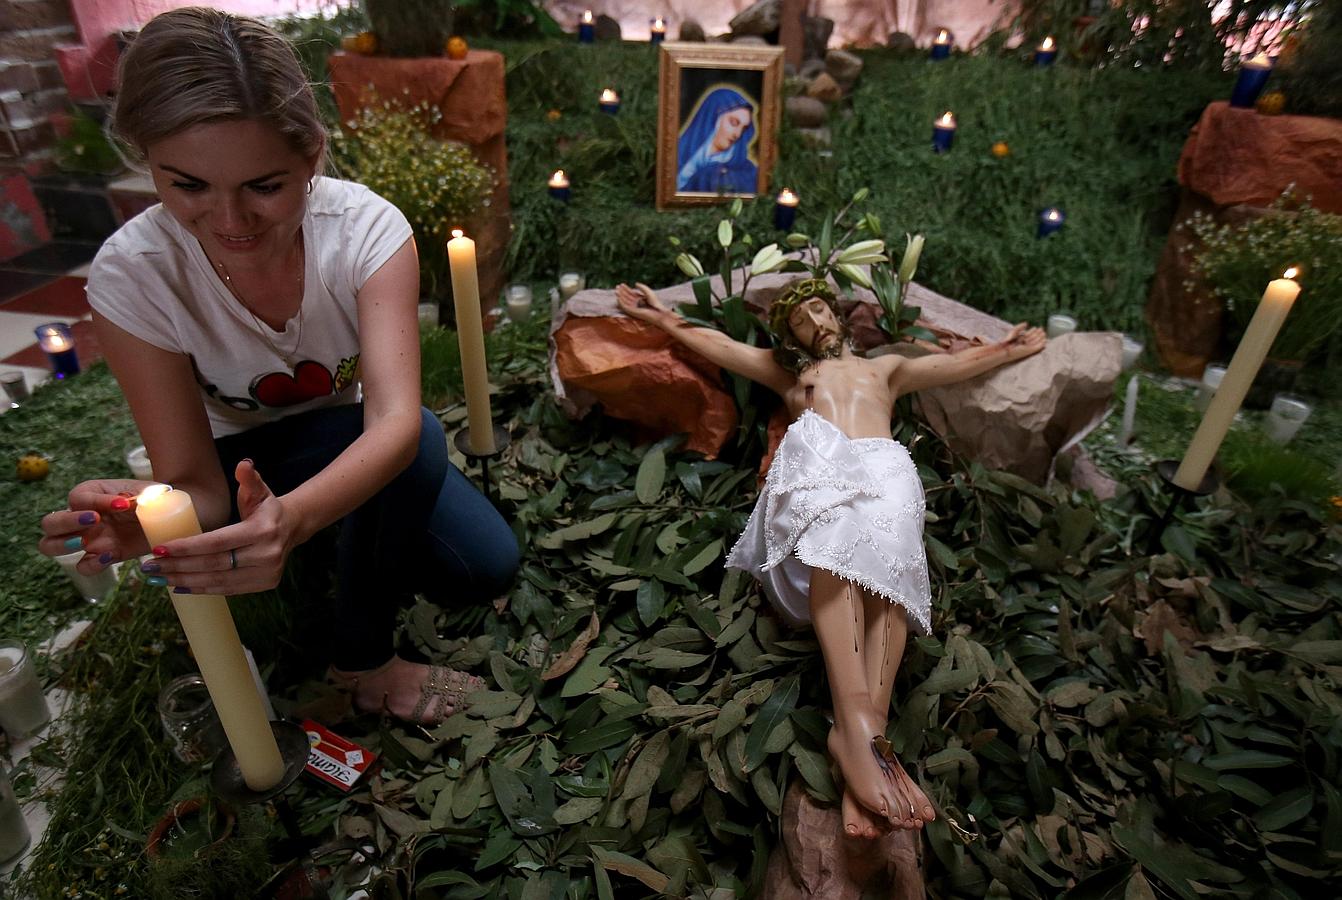 Cientos de pesonas velaron este viernes las imágenes de Cristo en el municipio mexicano de San Martín Hidalgo, en Jalisco